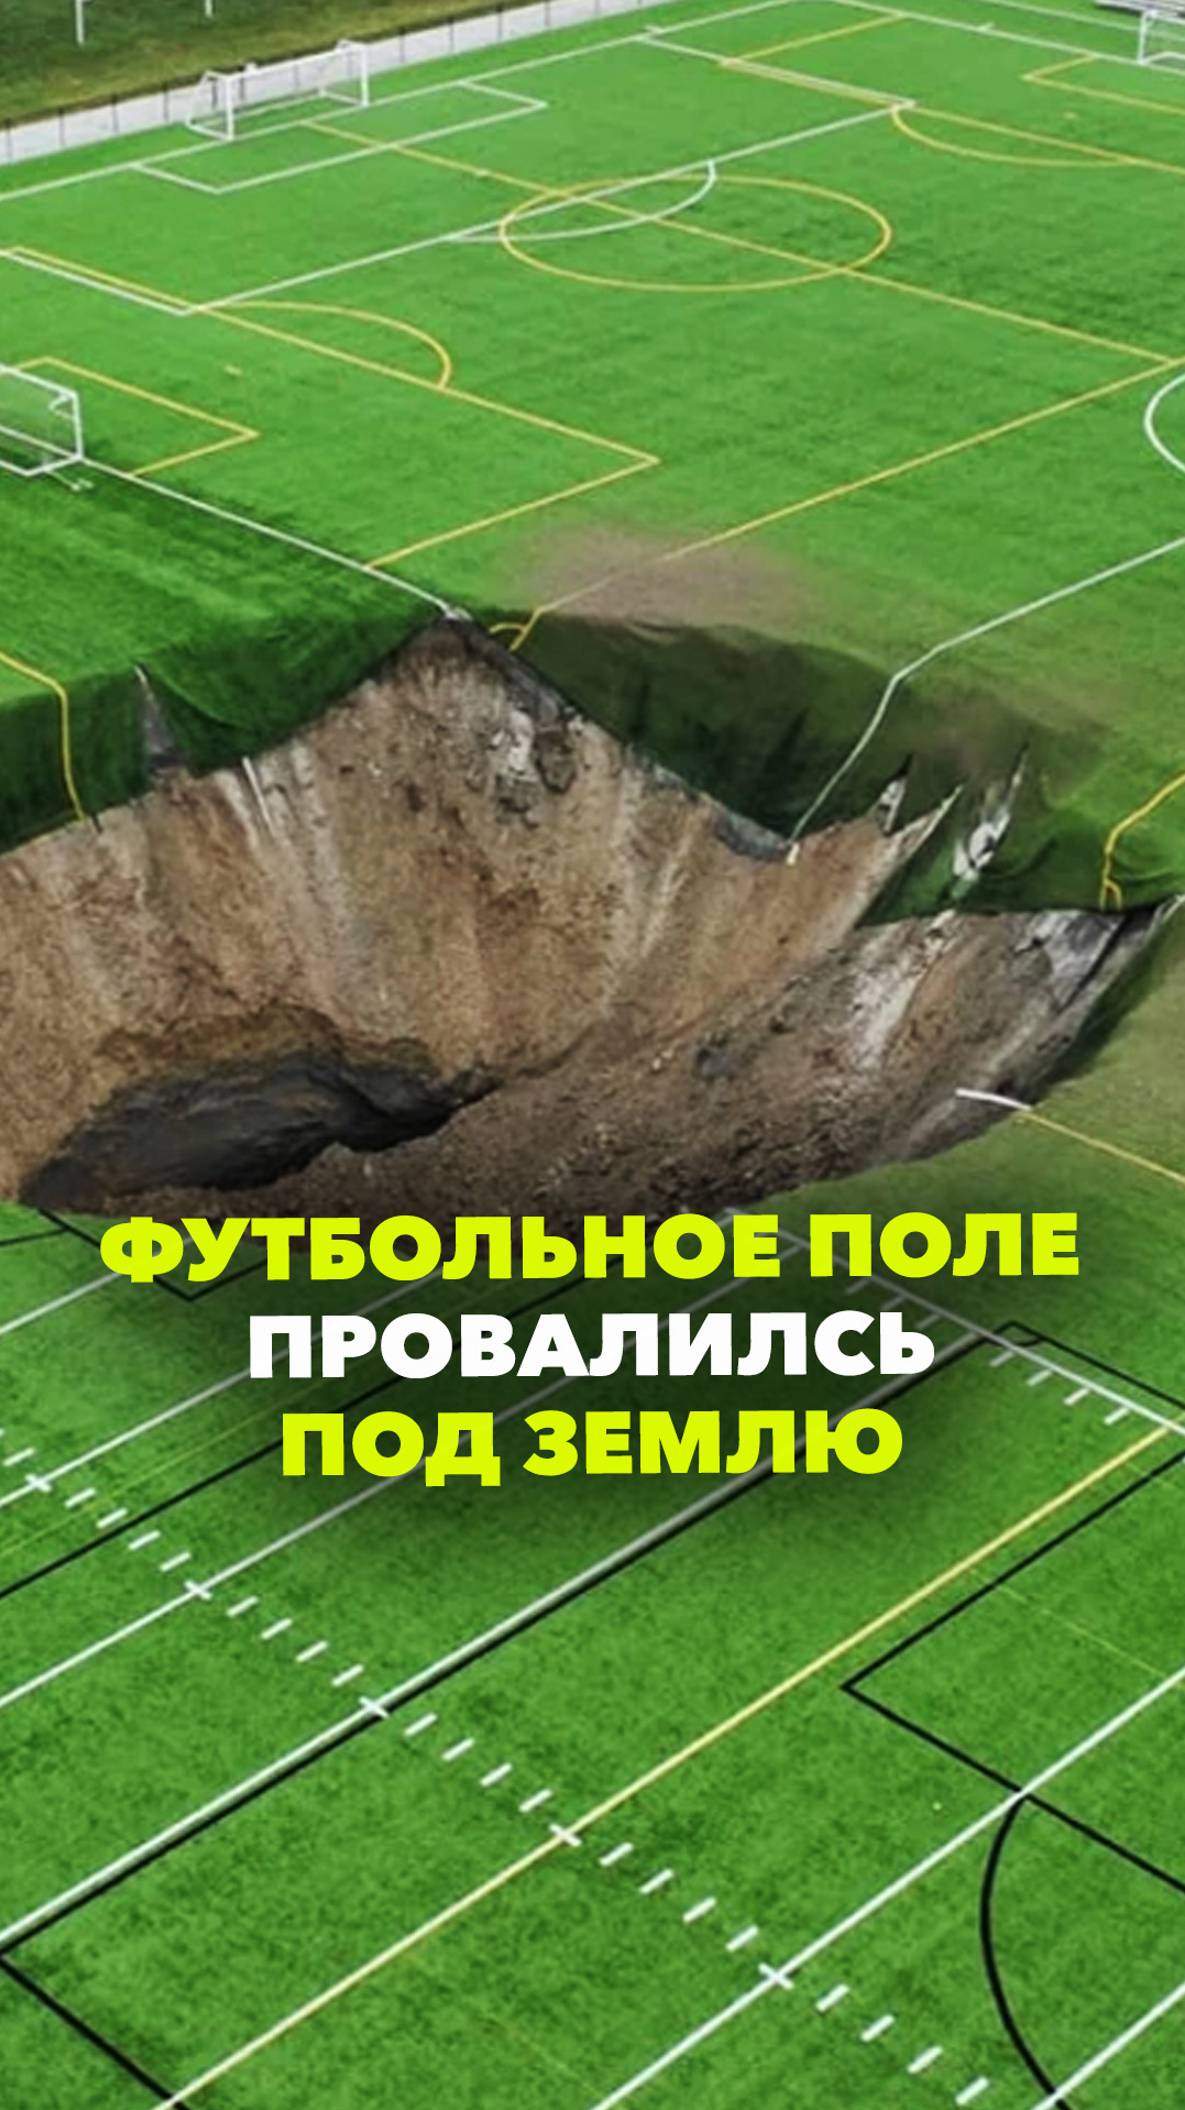 В США футбольное поле провалилось под землю – обрушилась шахта